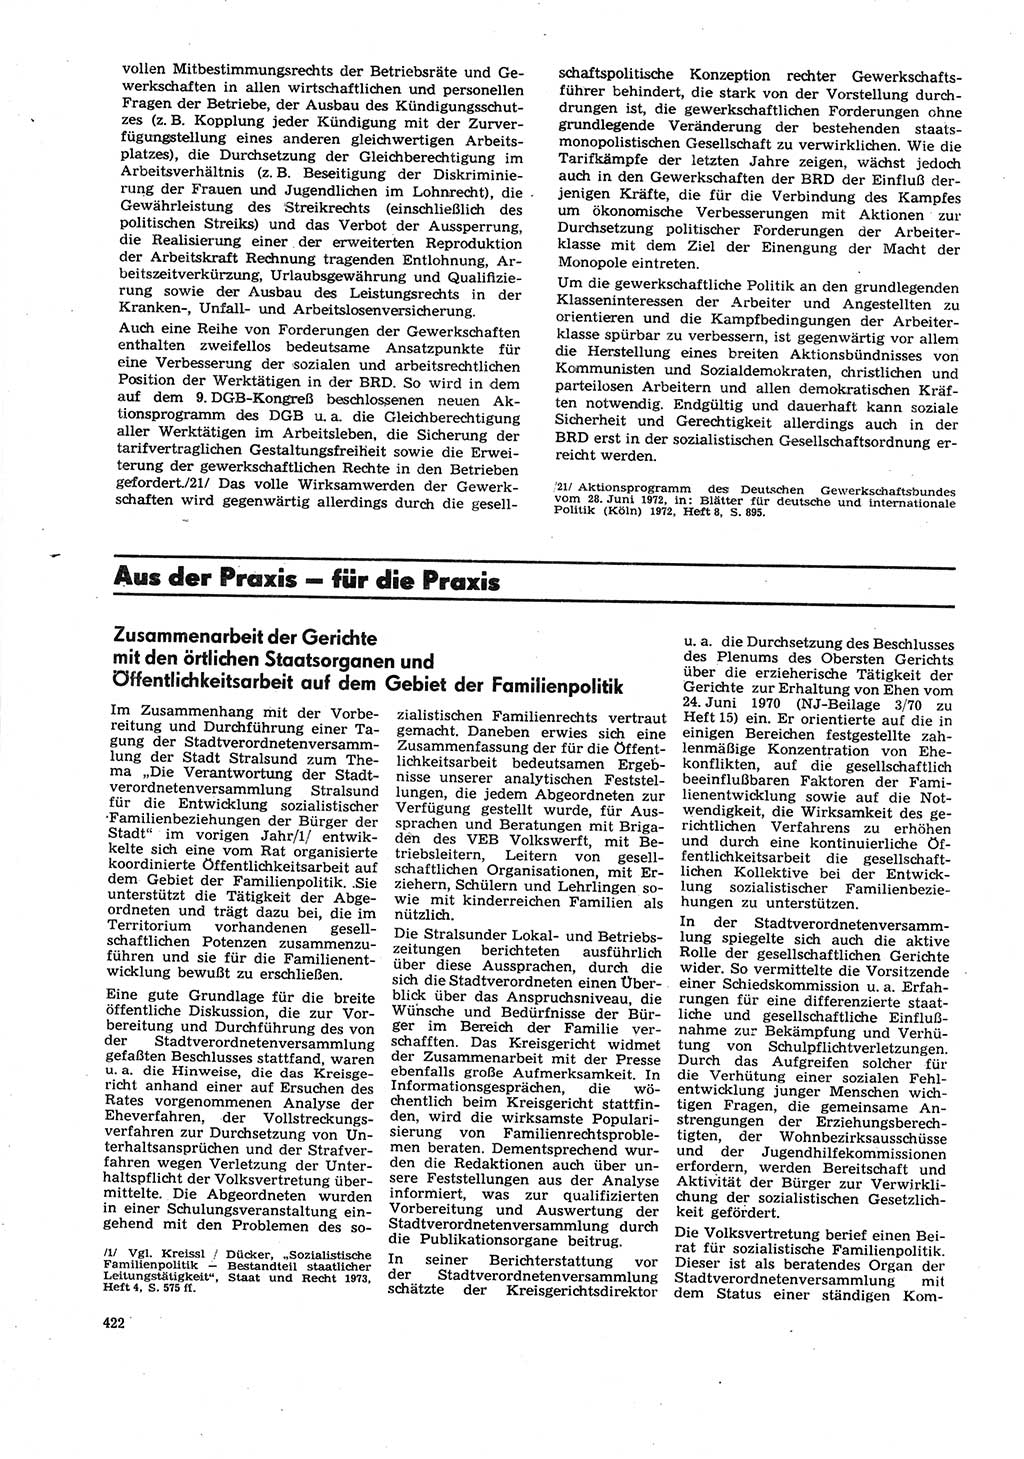 Neue Justiz (NJ), Zeitschrift für Recht und Rechtswissenschaft [Deutsche Demokratische Republik (DDR)], 27. Jahrgang 1973, Seite 422 (NJ DDR 1973, S. 422)